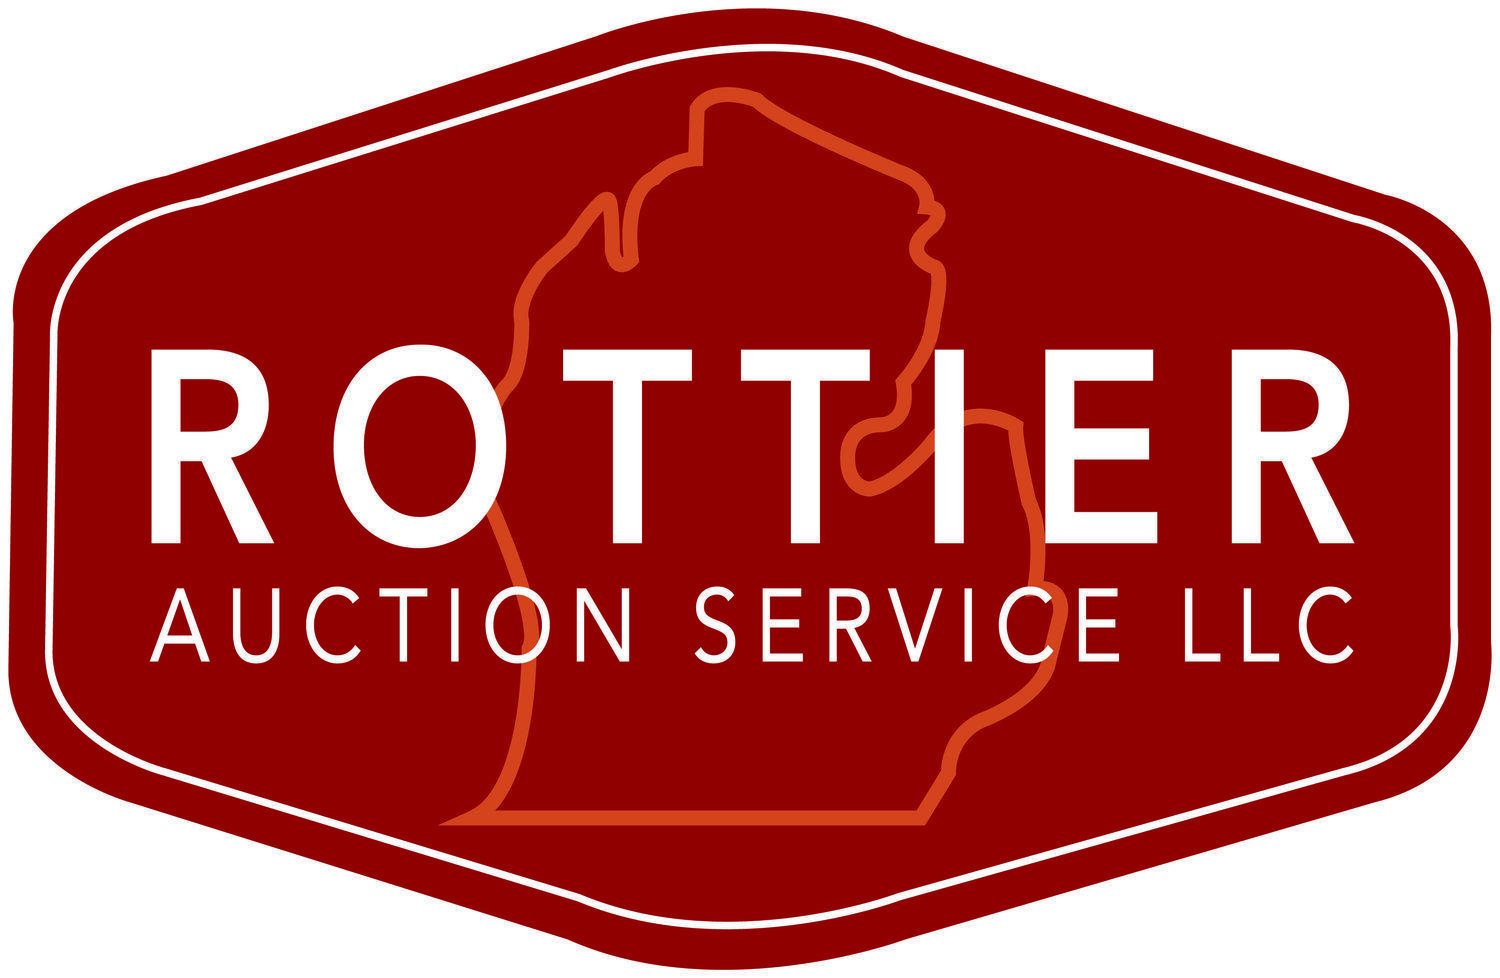 Auction Service Logo - Rottier Auction Service